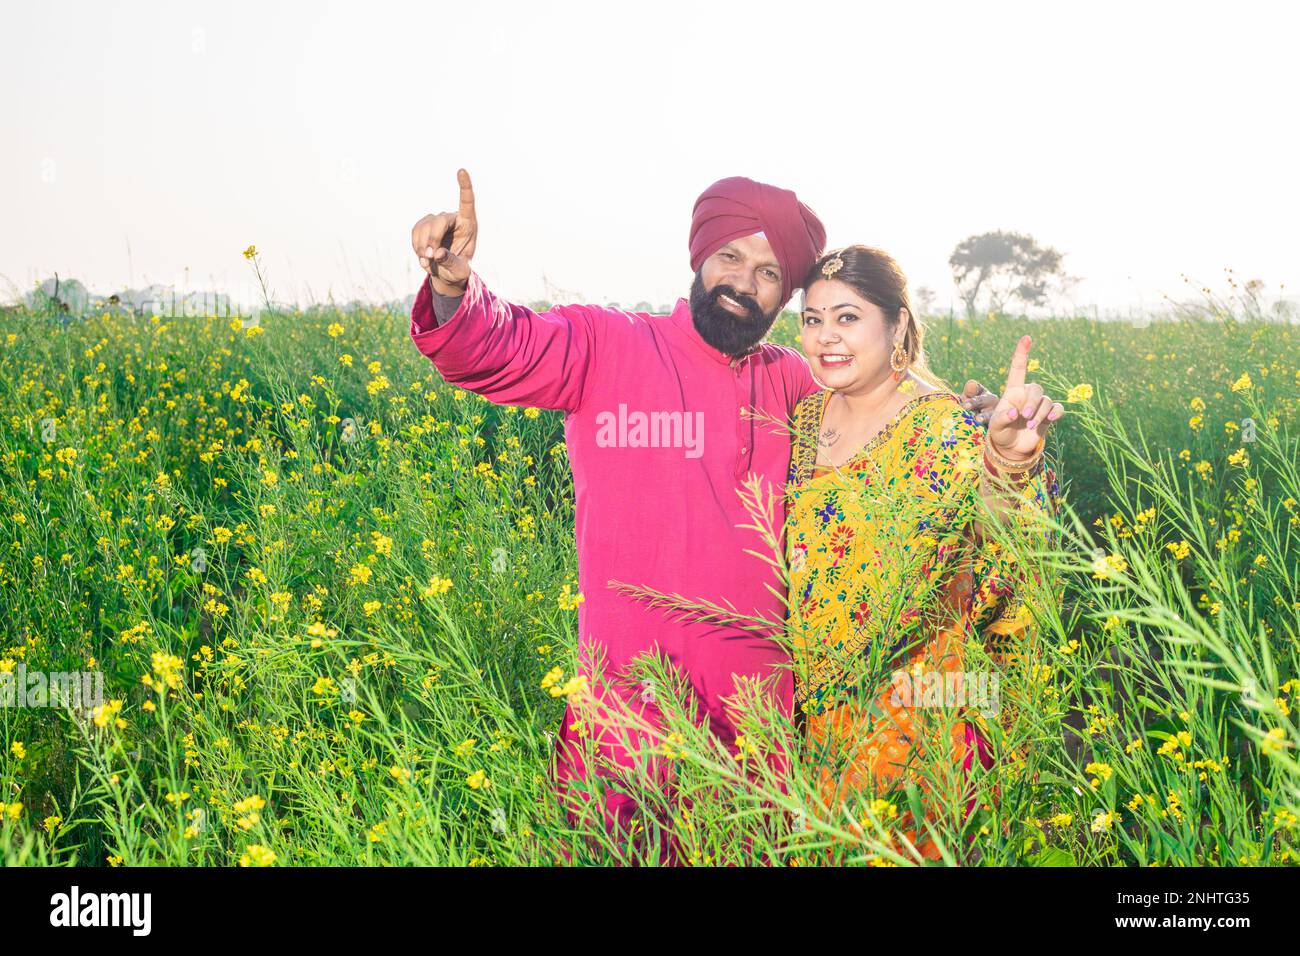 Glückliches junges Punjabi-sikh-Paar, das zusammensteht, tanzt auf dem Landwirtschaftsfeld. Stockfoto